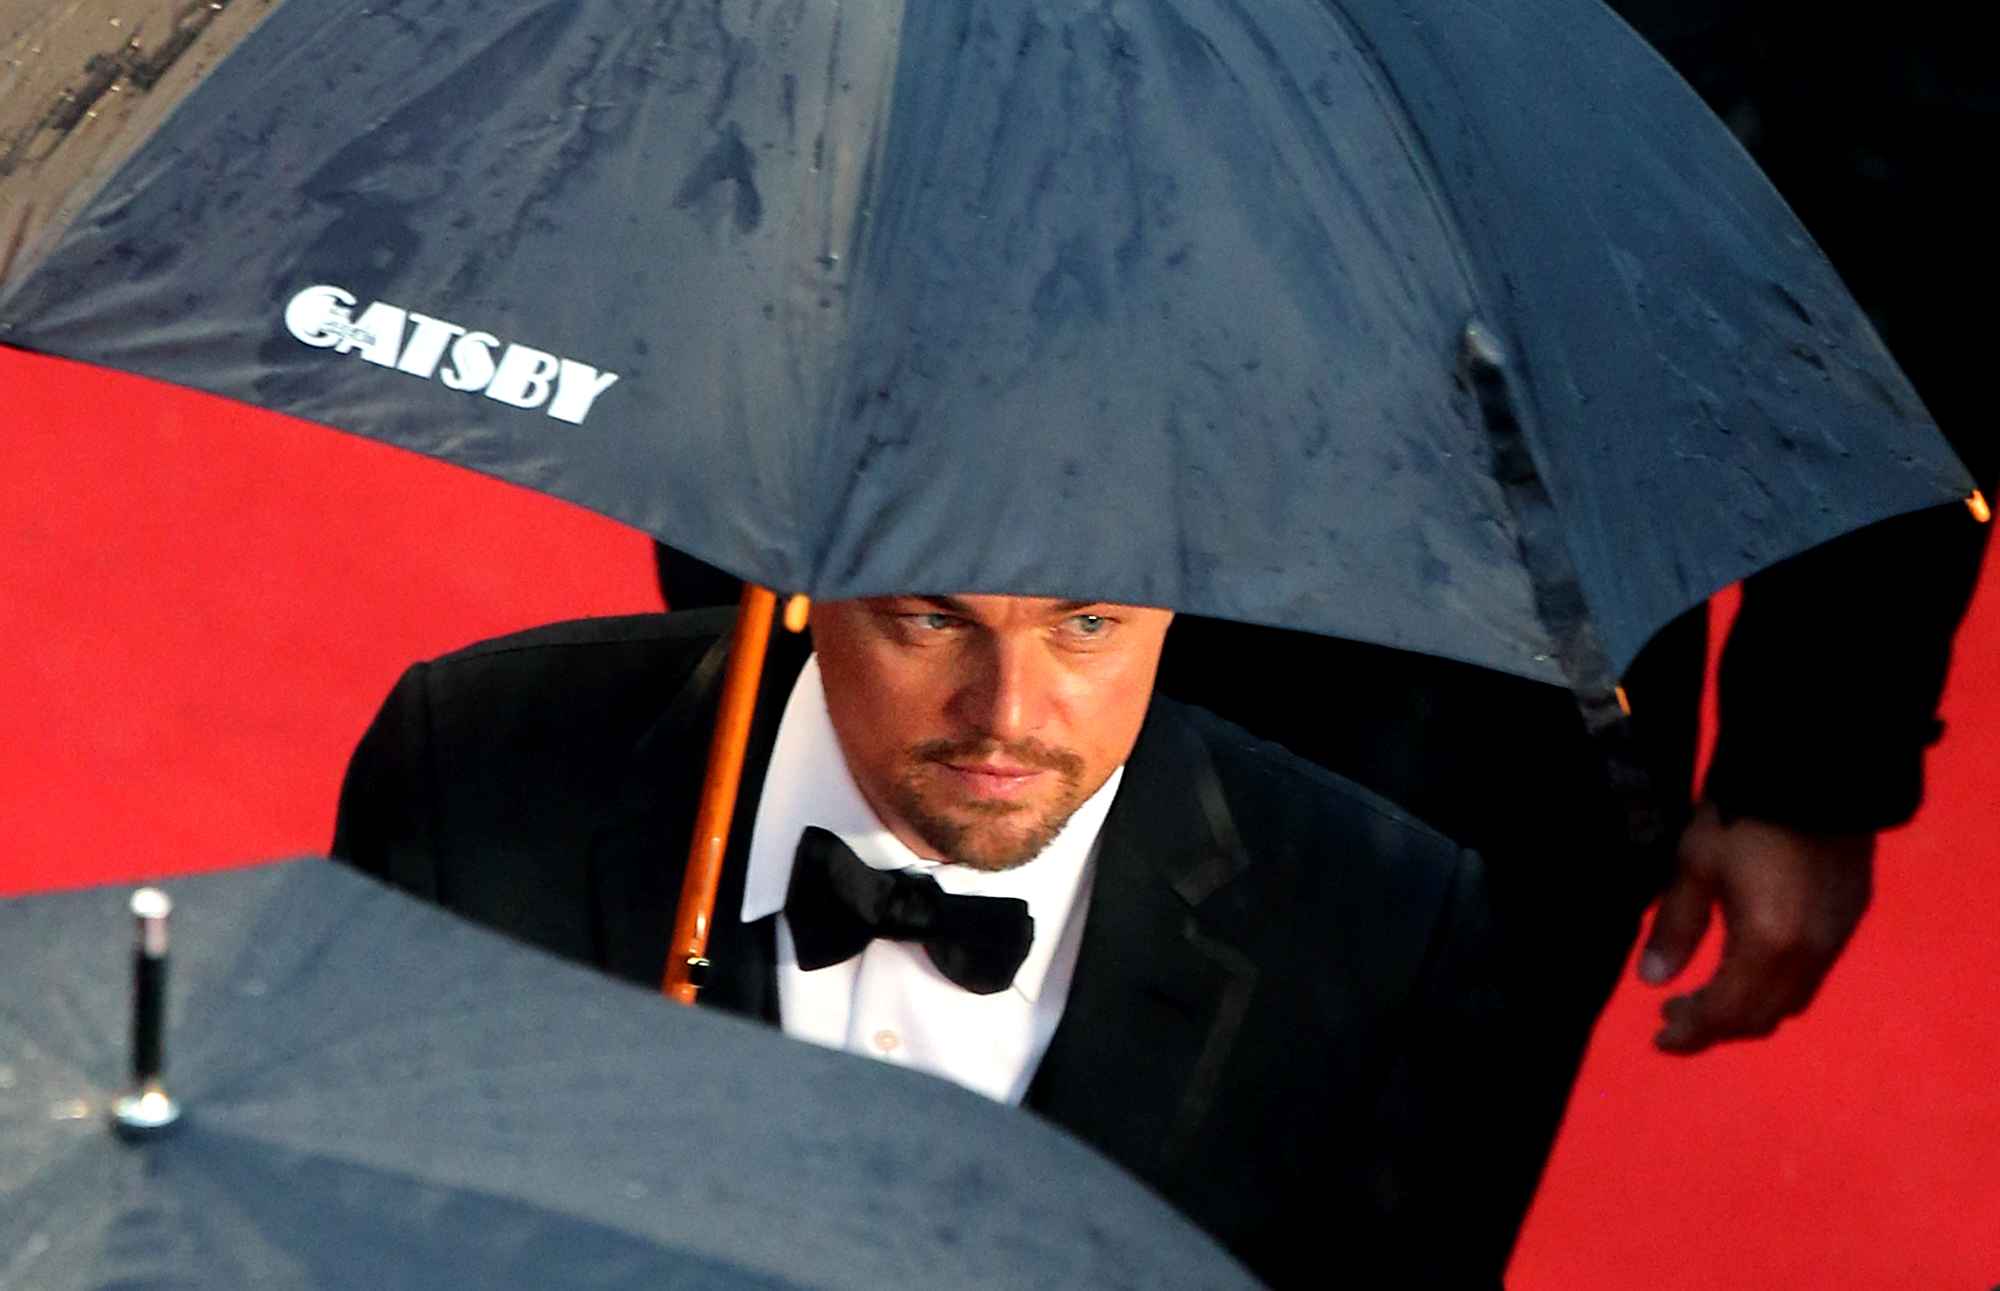 Di Caprio et son parapluie personnalisé Gatsby au festival